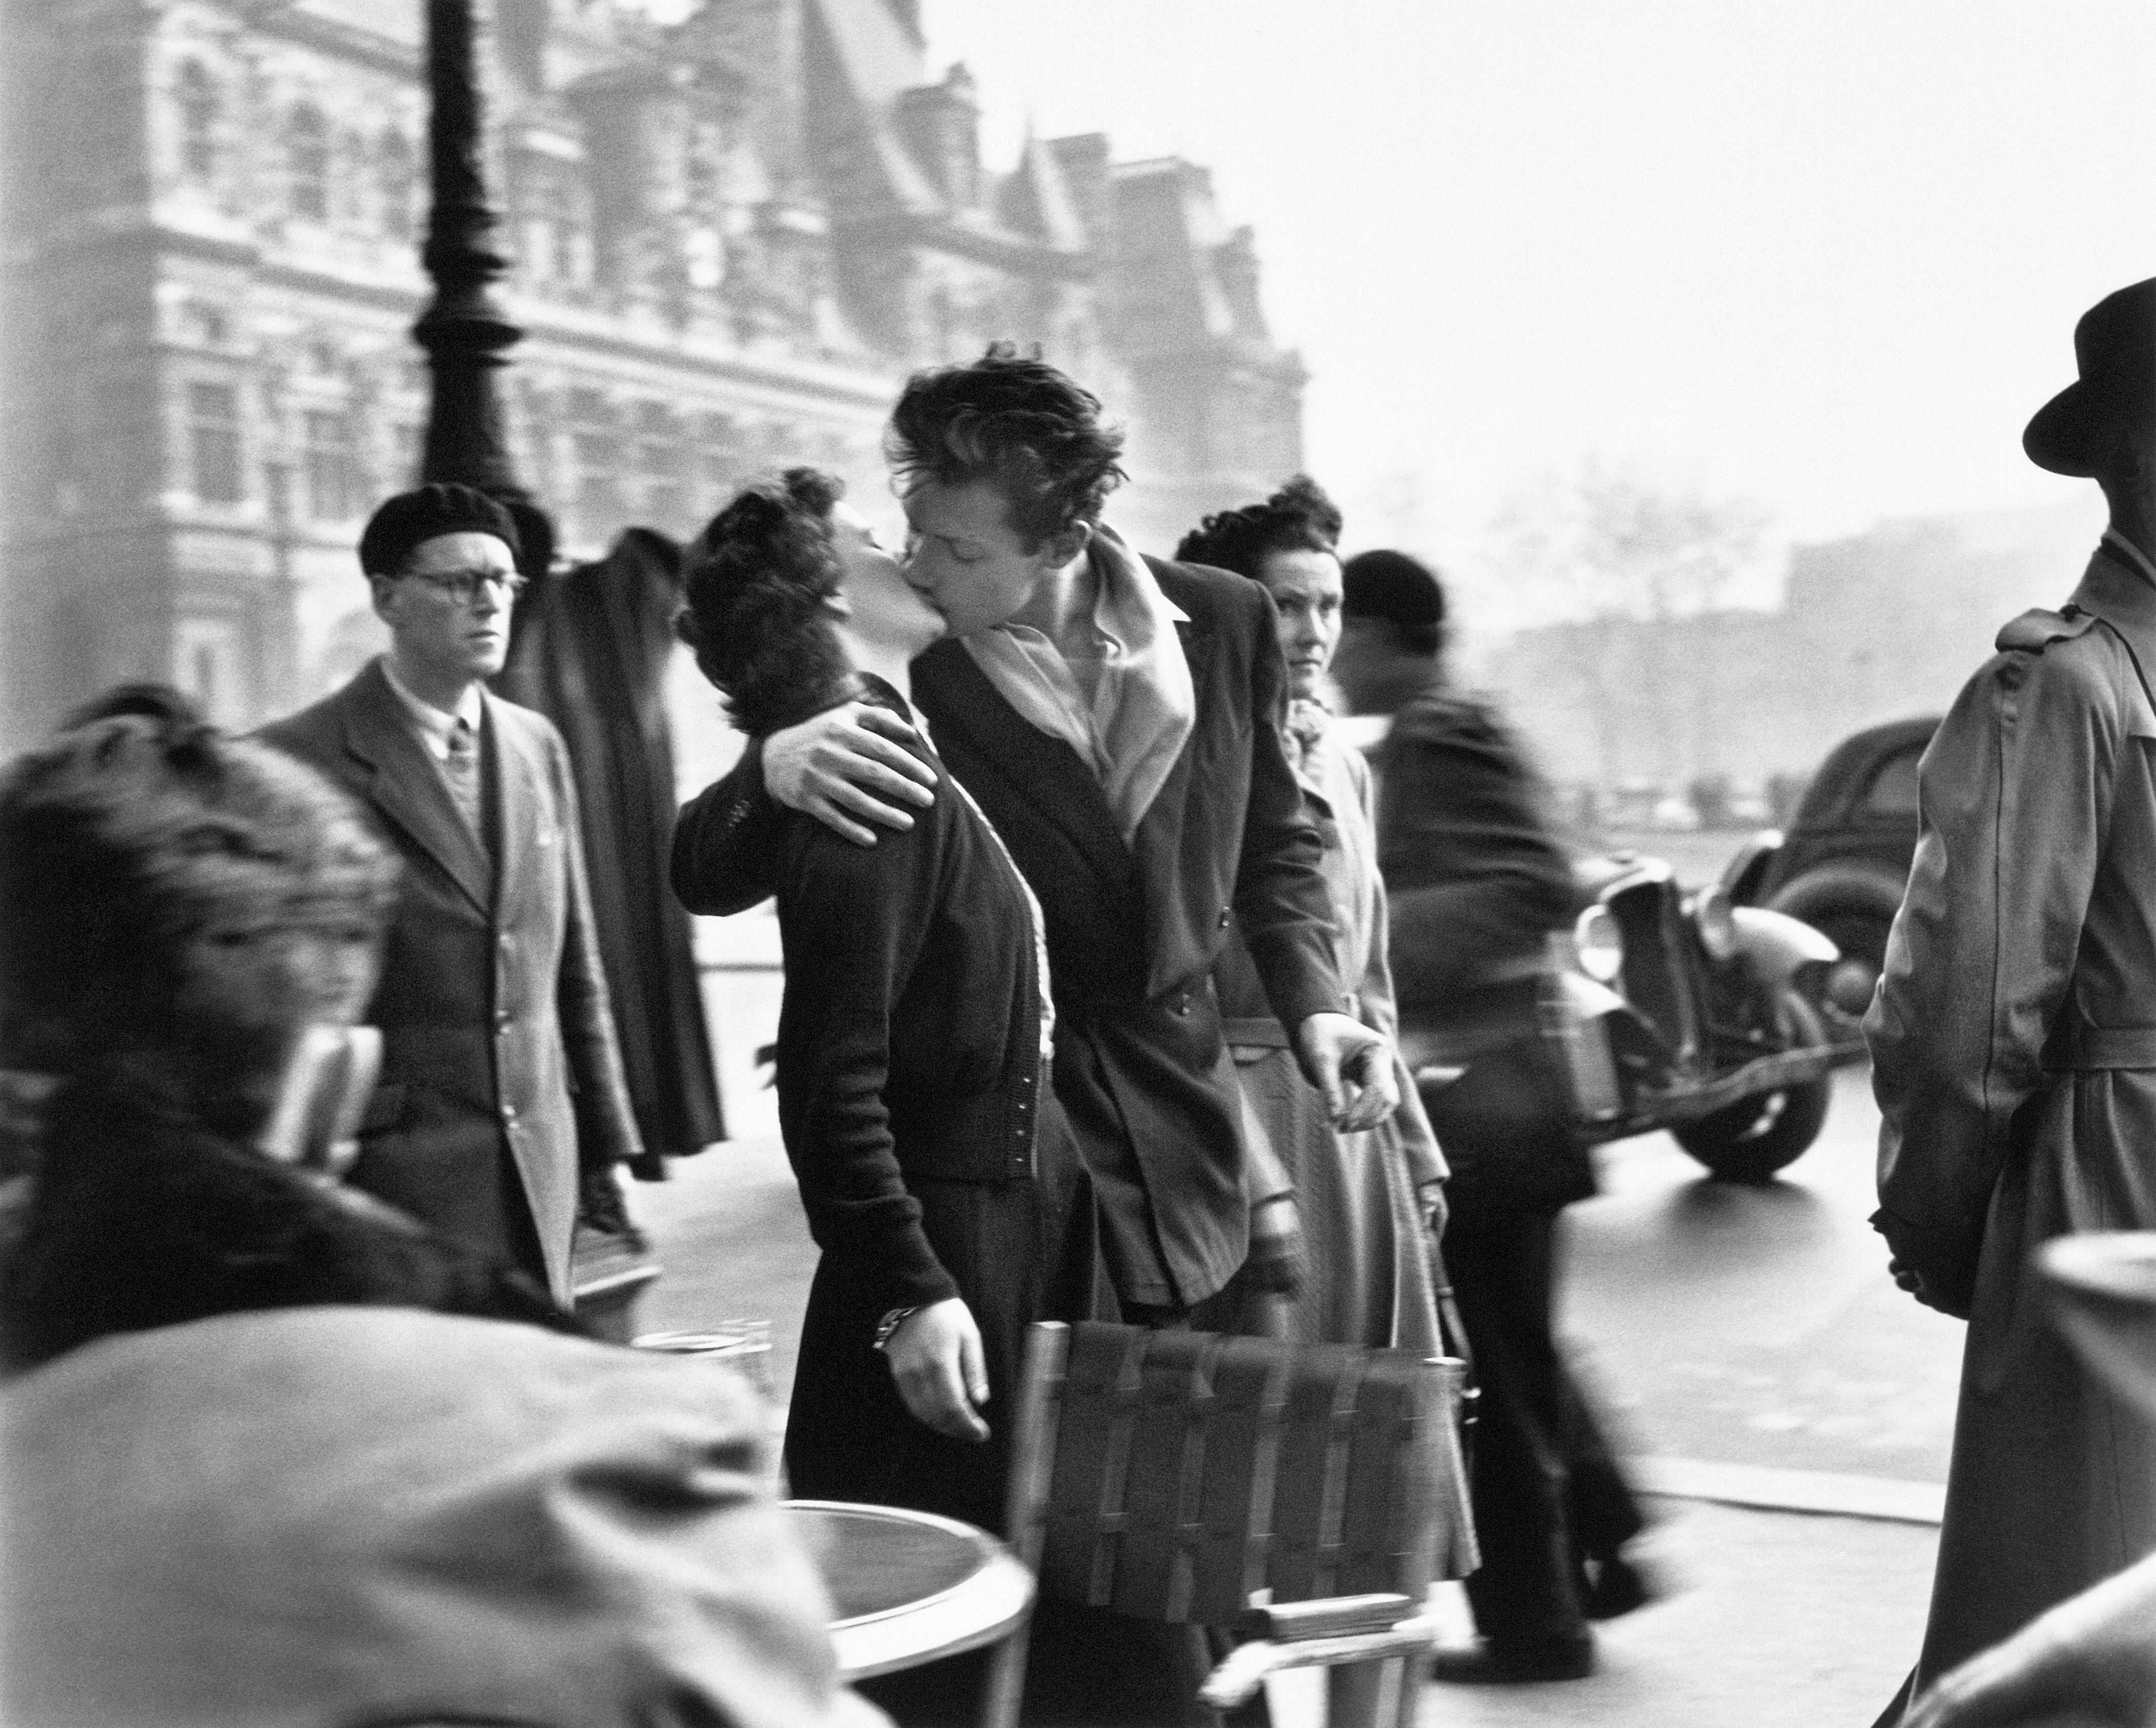 Robert Doisneau: Le Baiser de l’Hôtel de Ville, Paris, 1950. © Atelier Robert Doisneau, 2016